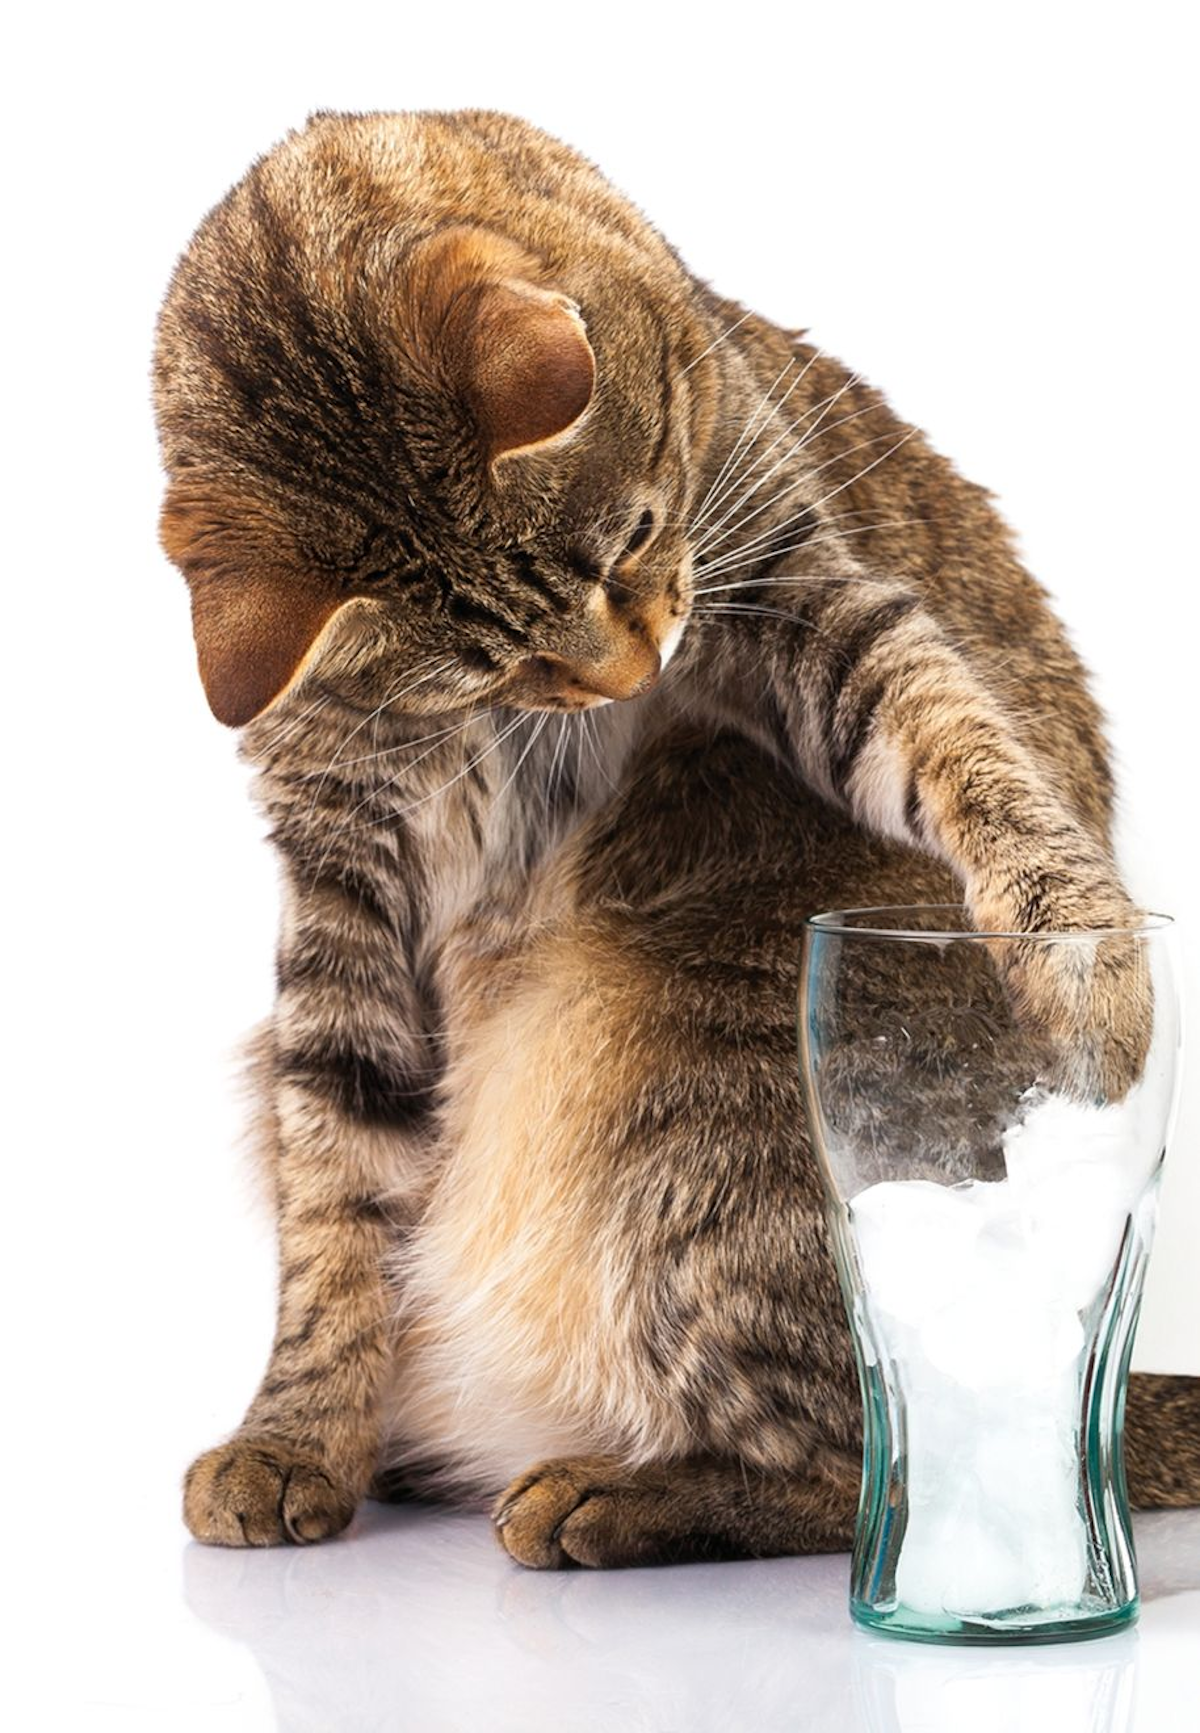 Dla kotów nowe źródła wody, takie jak kostki lodu, mogą być interesującymi obiektami do zabawy i może to także zachęcić je do większego spożycia wody.